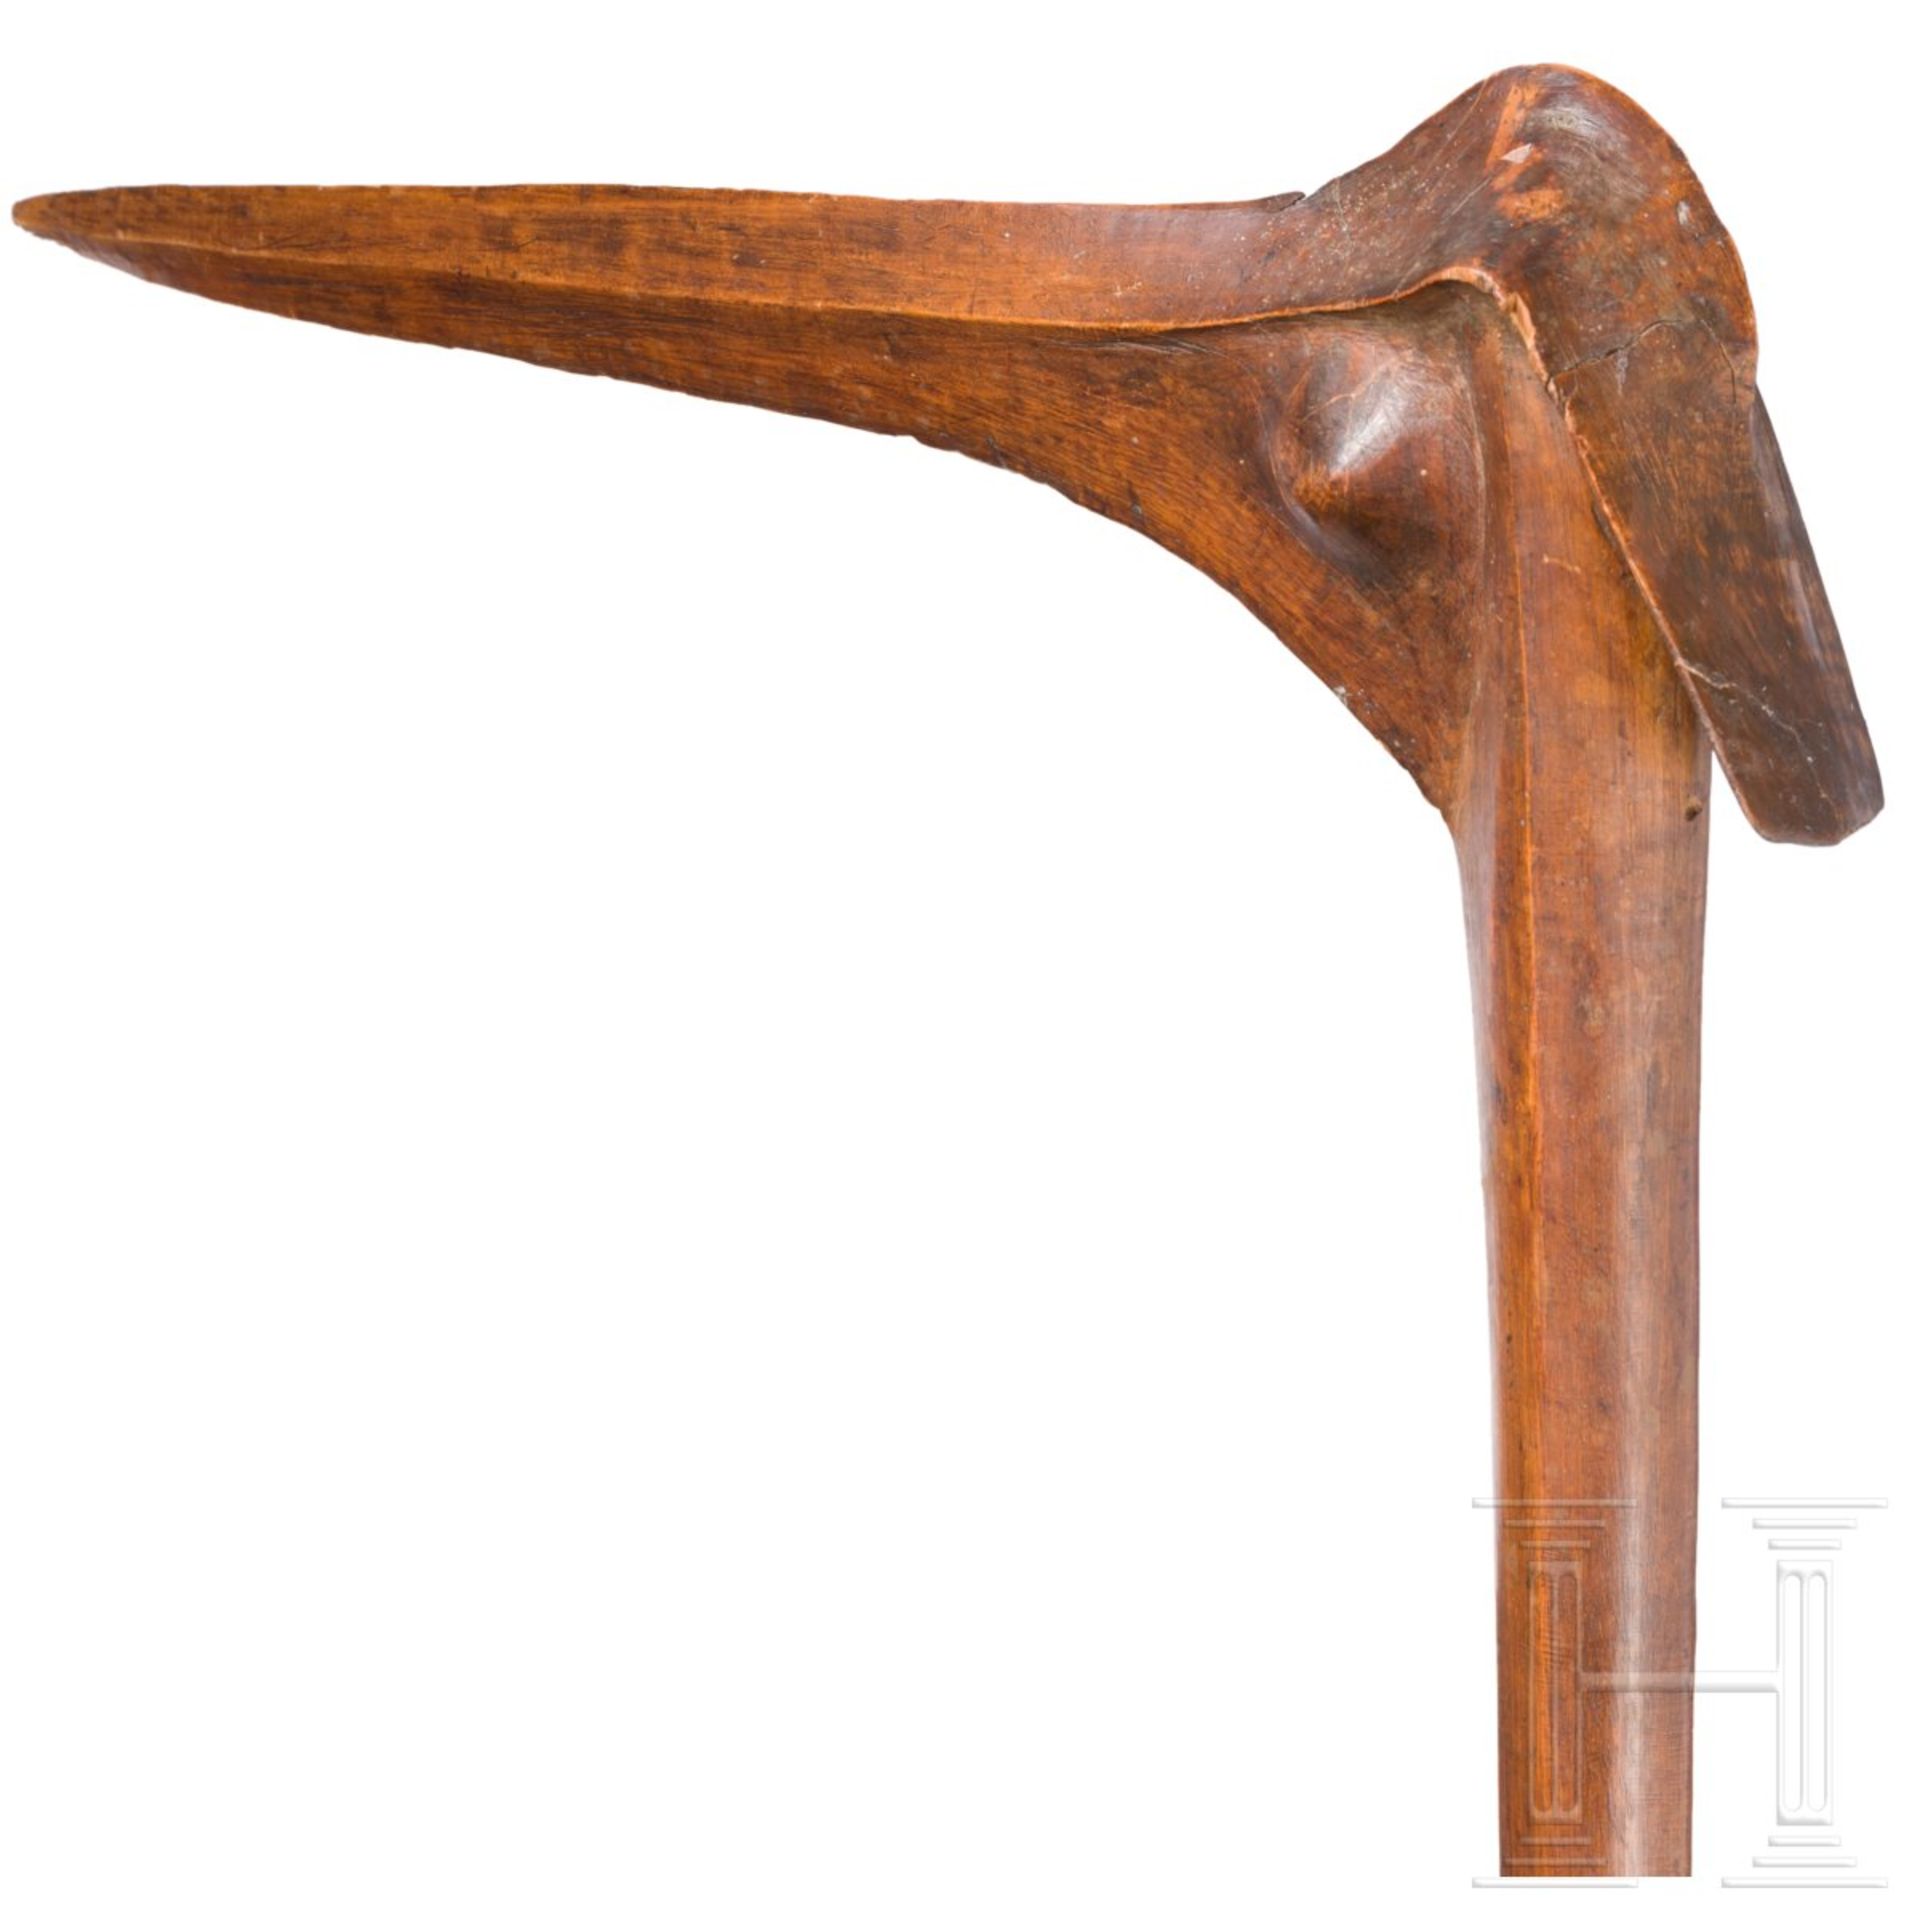 Vogelkopfkeule, NeukaledonienTypisch geformter Schlagkopf in Form eines stilisierten Vogelkopfes mit - Bild 4 aus 4